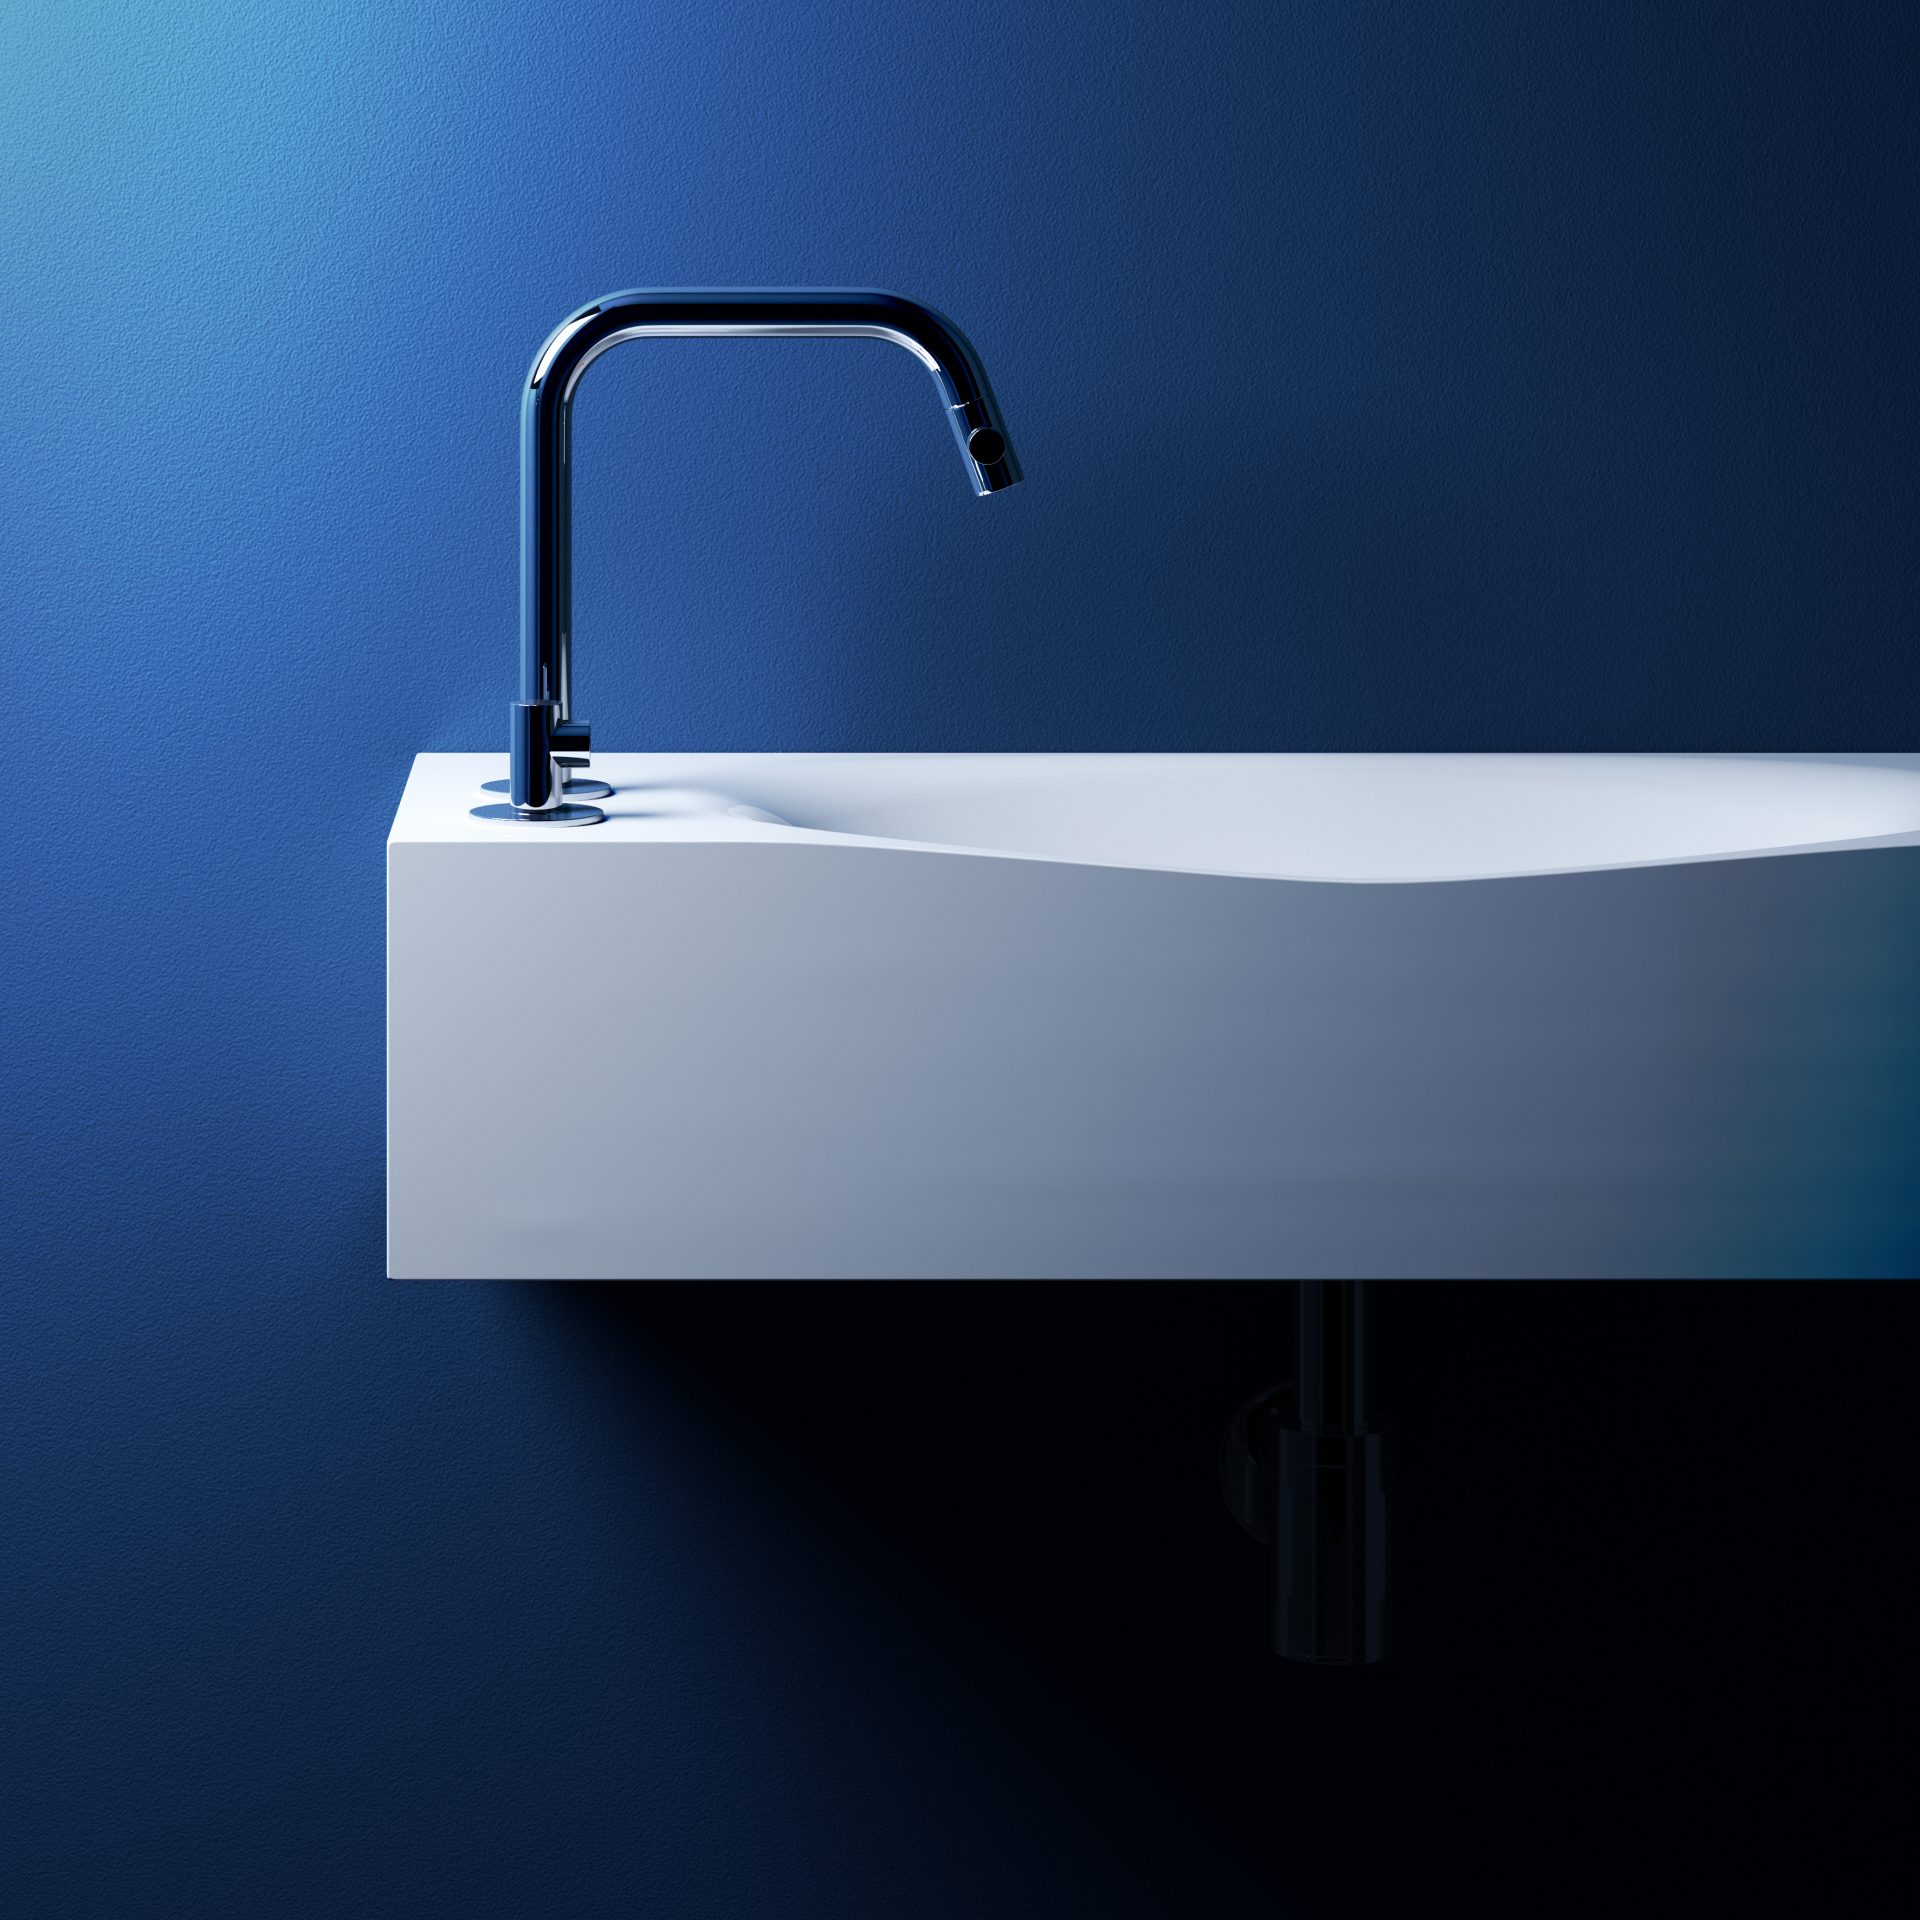 Viskeus leef ermee garen Fonteinen - Clou bath findings - Sanitair voor design badkamers